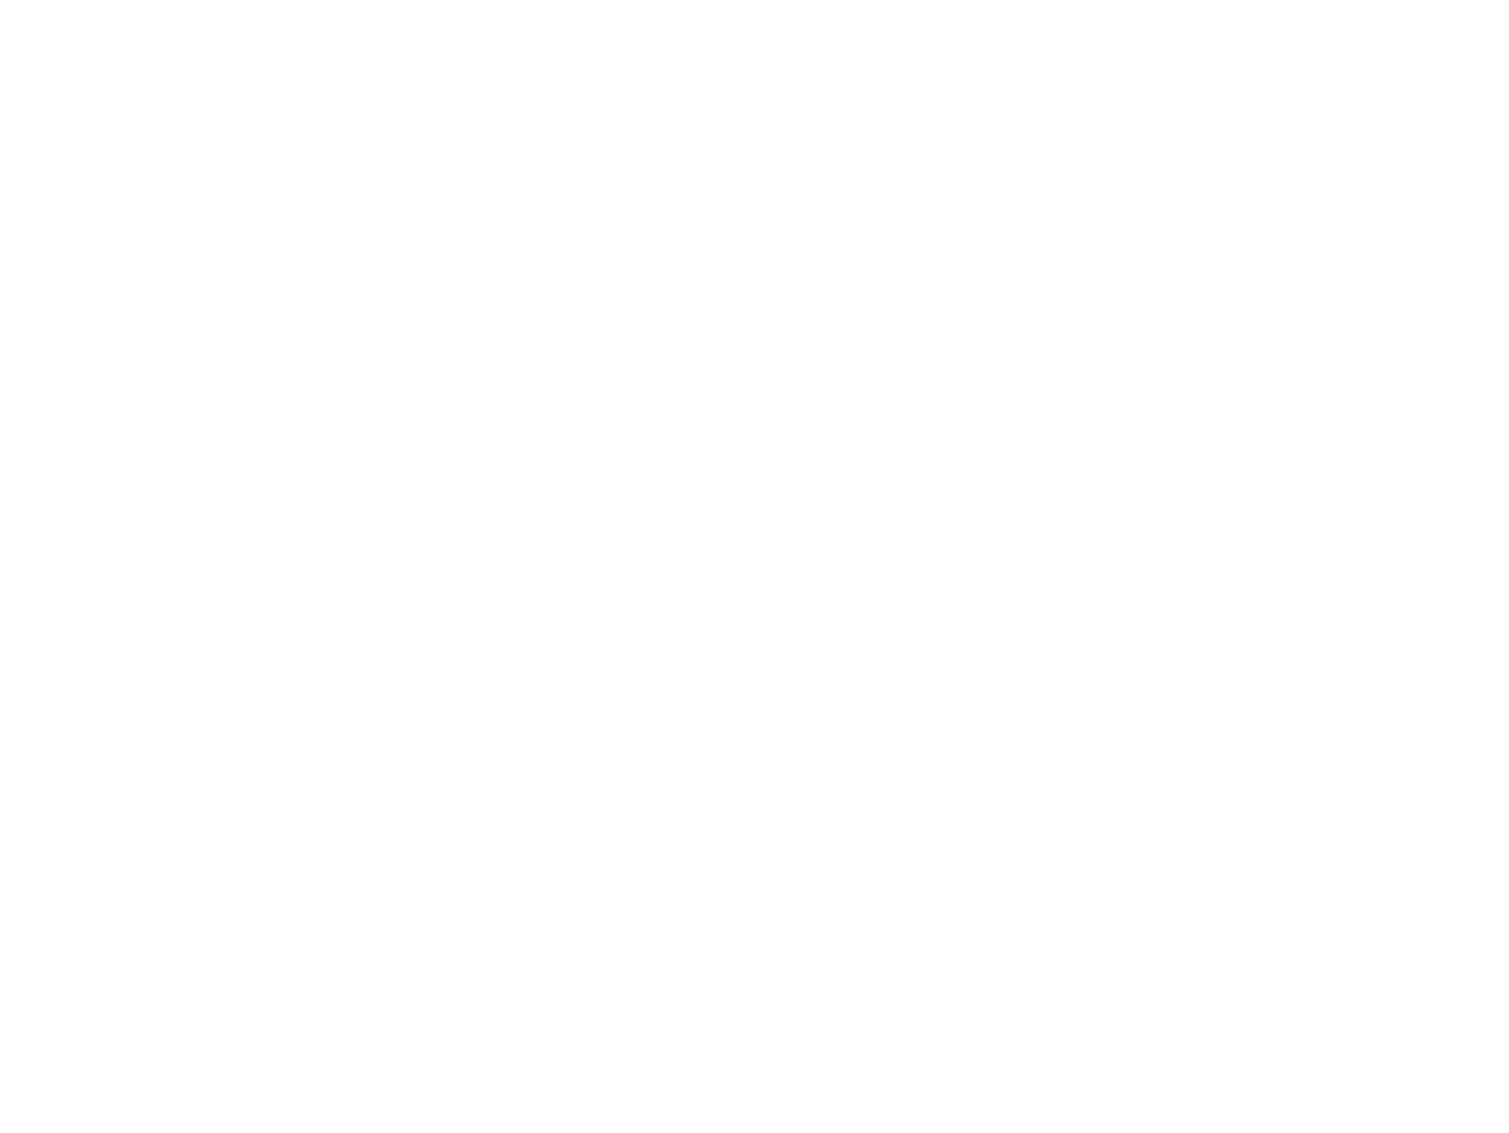 Sojitz Corporation logo pour fonds sombres (PNG transparent)